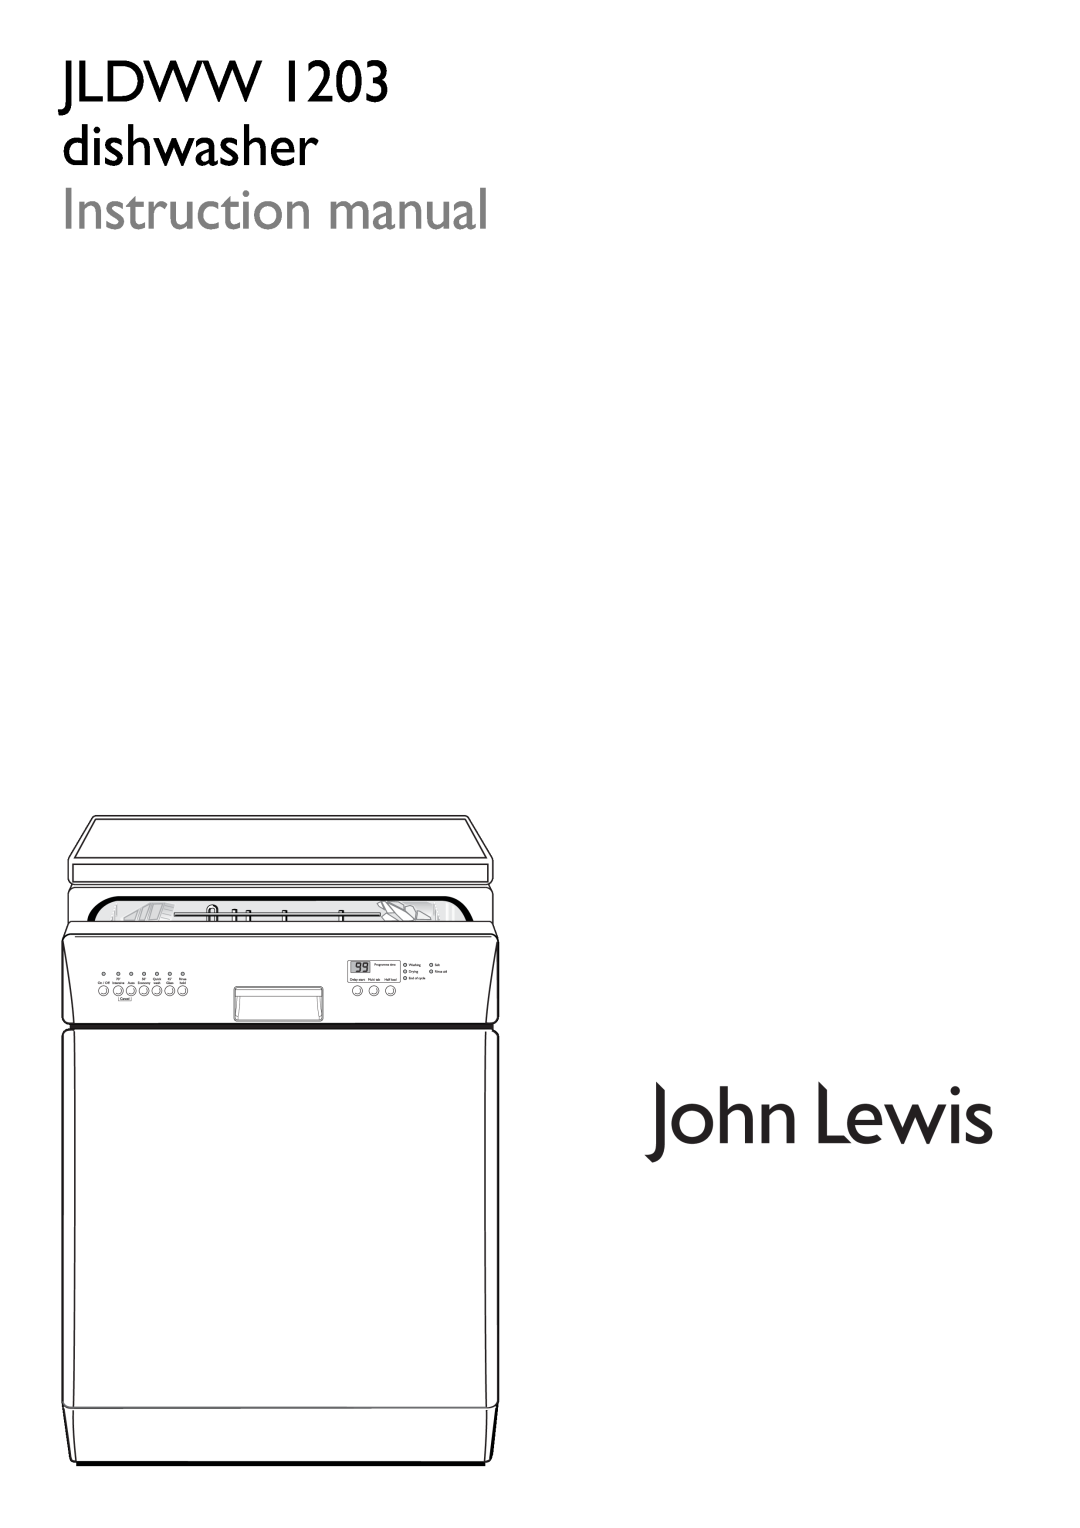 John Lewis JLDWW 1203 instruction manual 